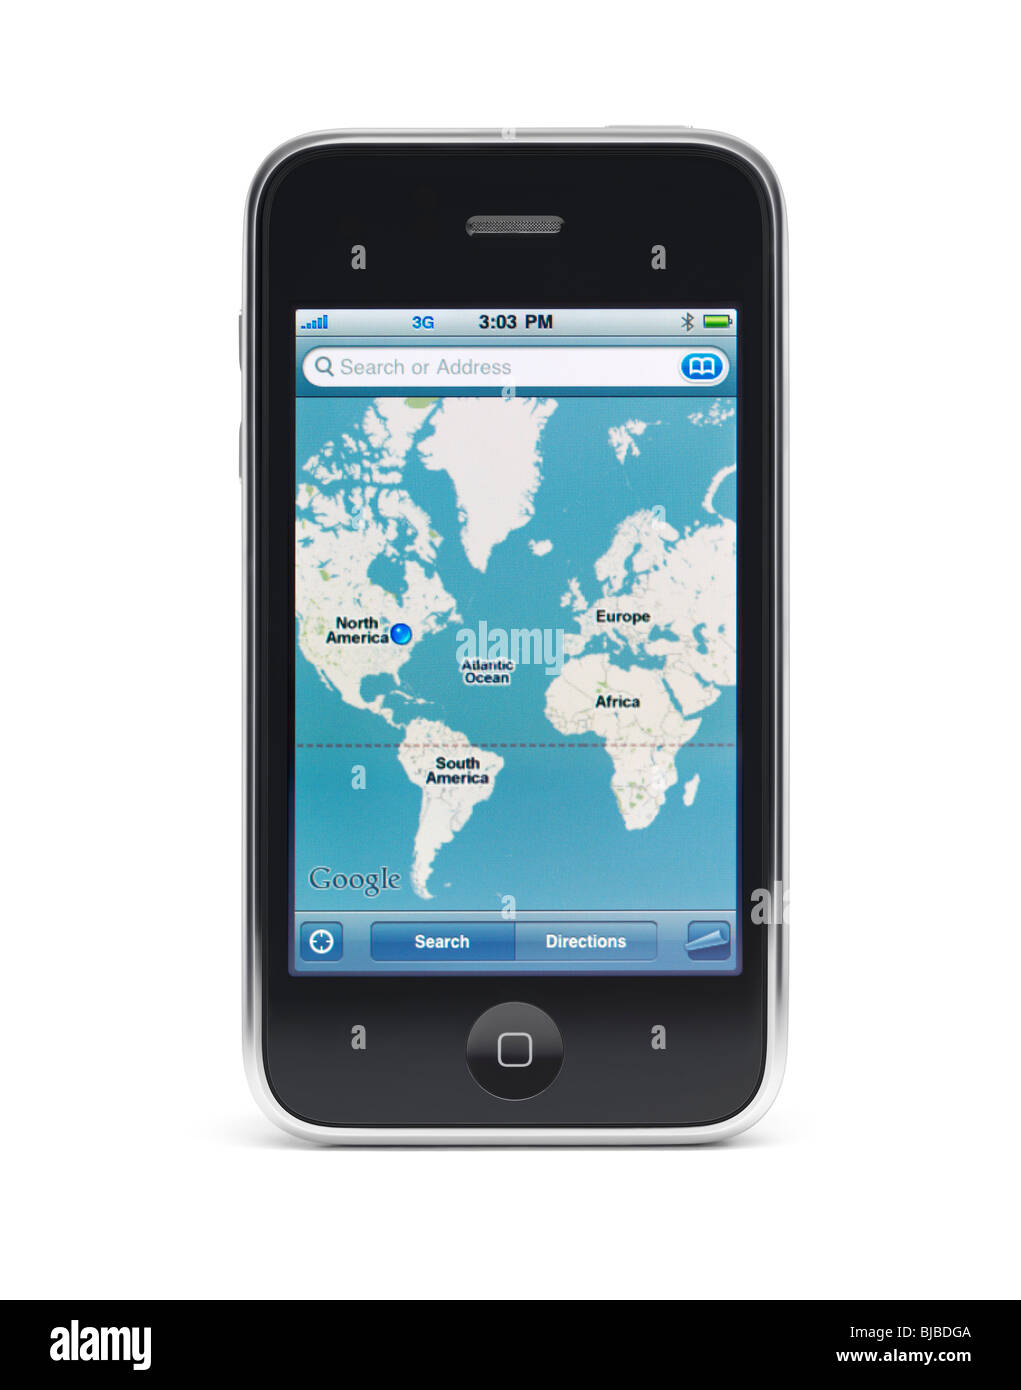 Bạn cần một chiếc điện thoại thông minh mạnh mẽ và có bản đồ Google để dẫn đường cho mình? Điện thoại smartphone iPhone 3Gs chính là lựa chọn hoàn hảo. Hình ảnh hiển thị bản đồ rõ nét trên màn hình sáng và sắc nét chắc chắn sẽ làm bạn hài lòng. 